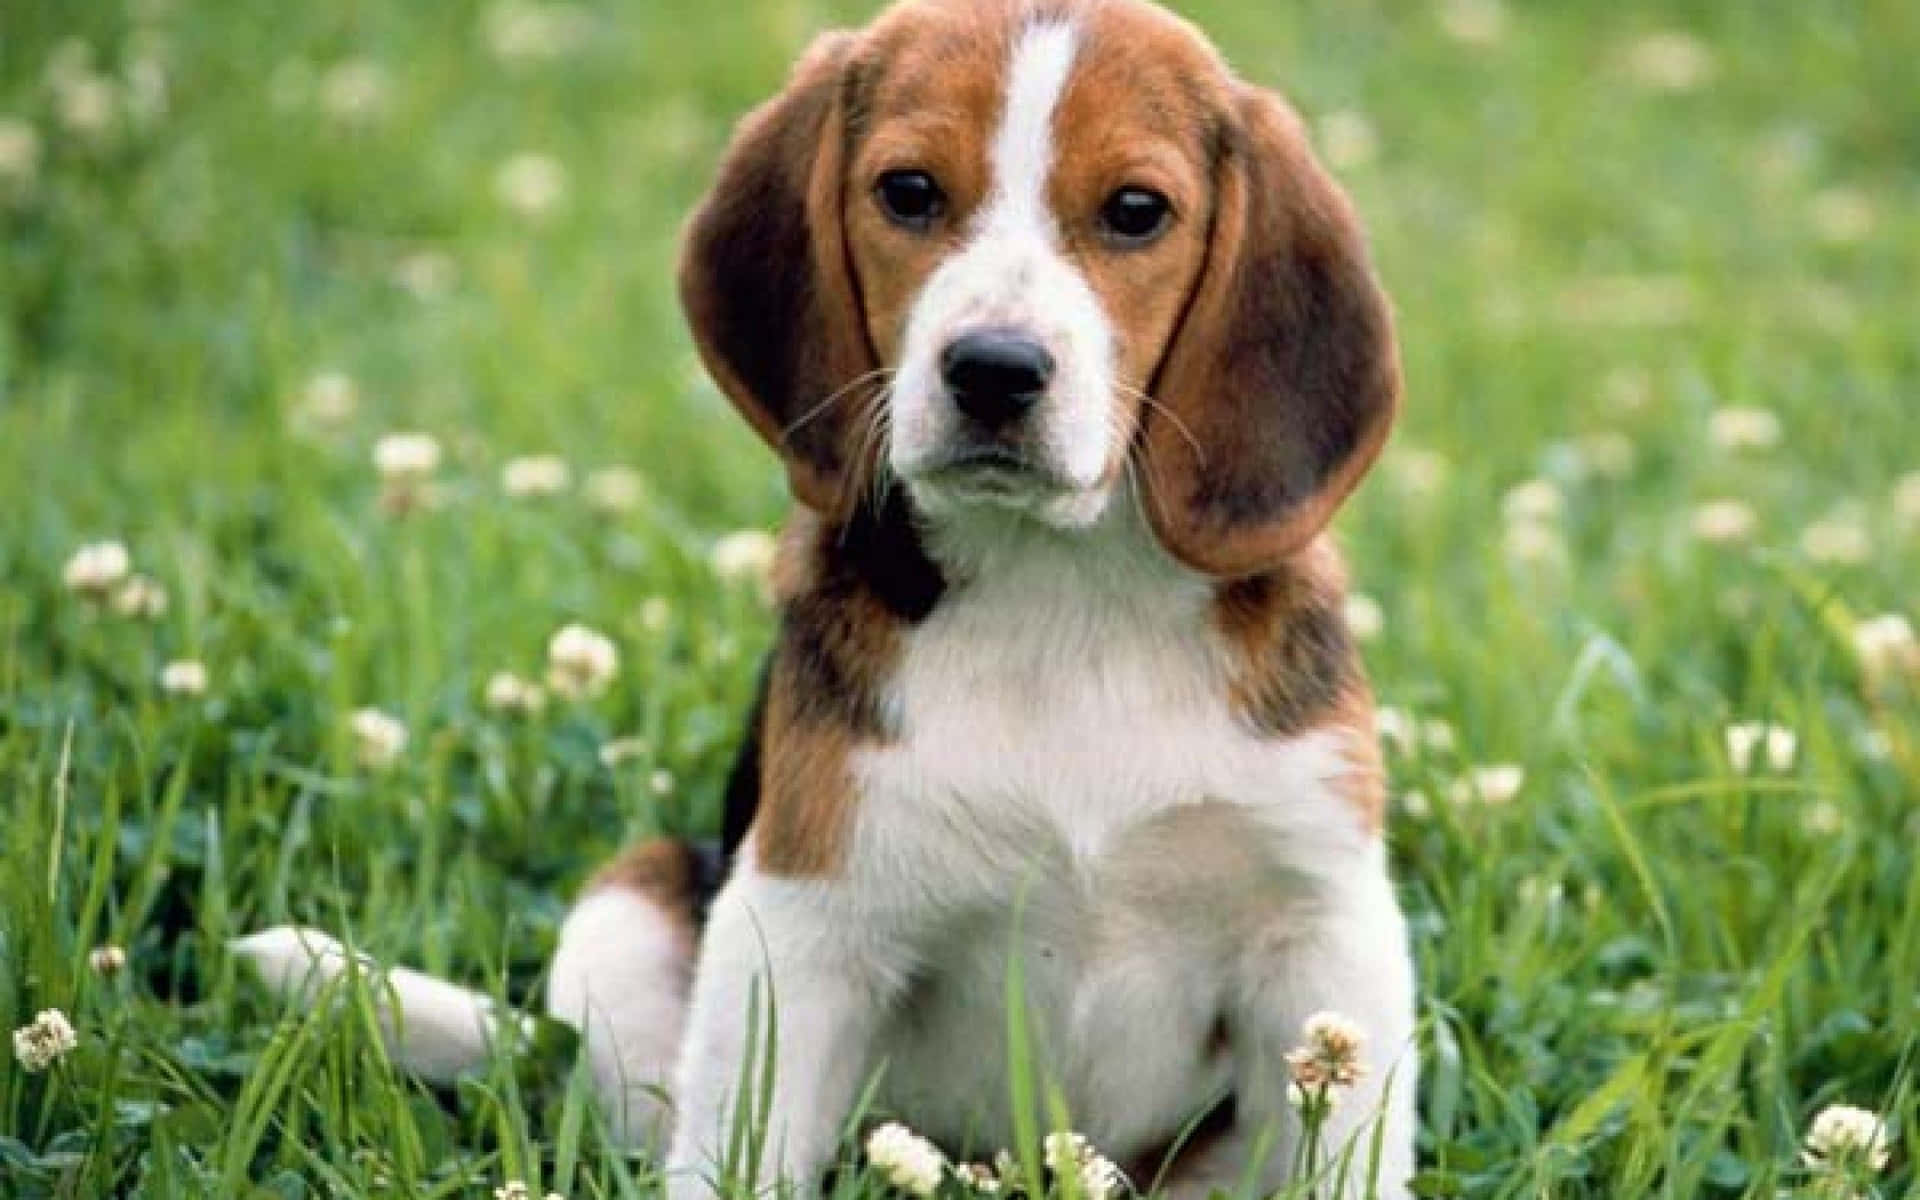 Dosadorables Perros Beagle Disfrutando De Su Tiempo De Juego.